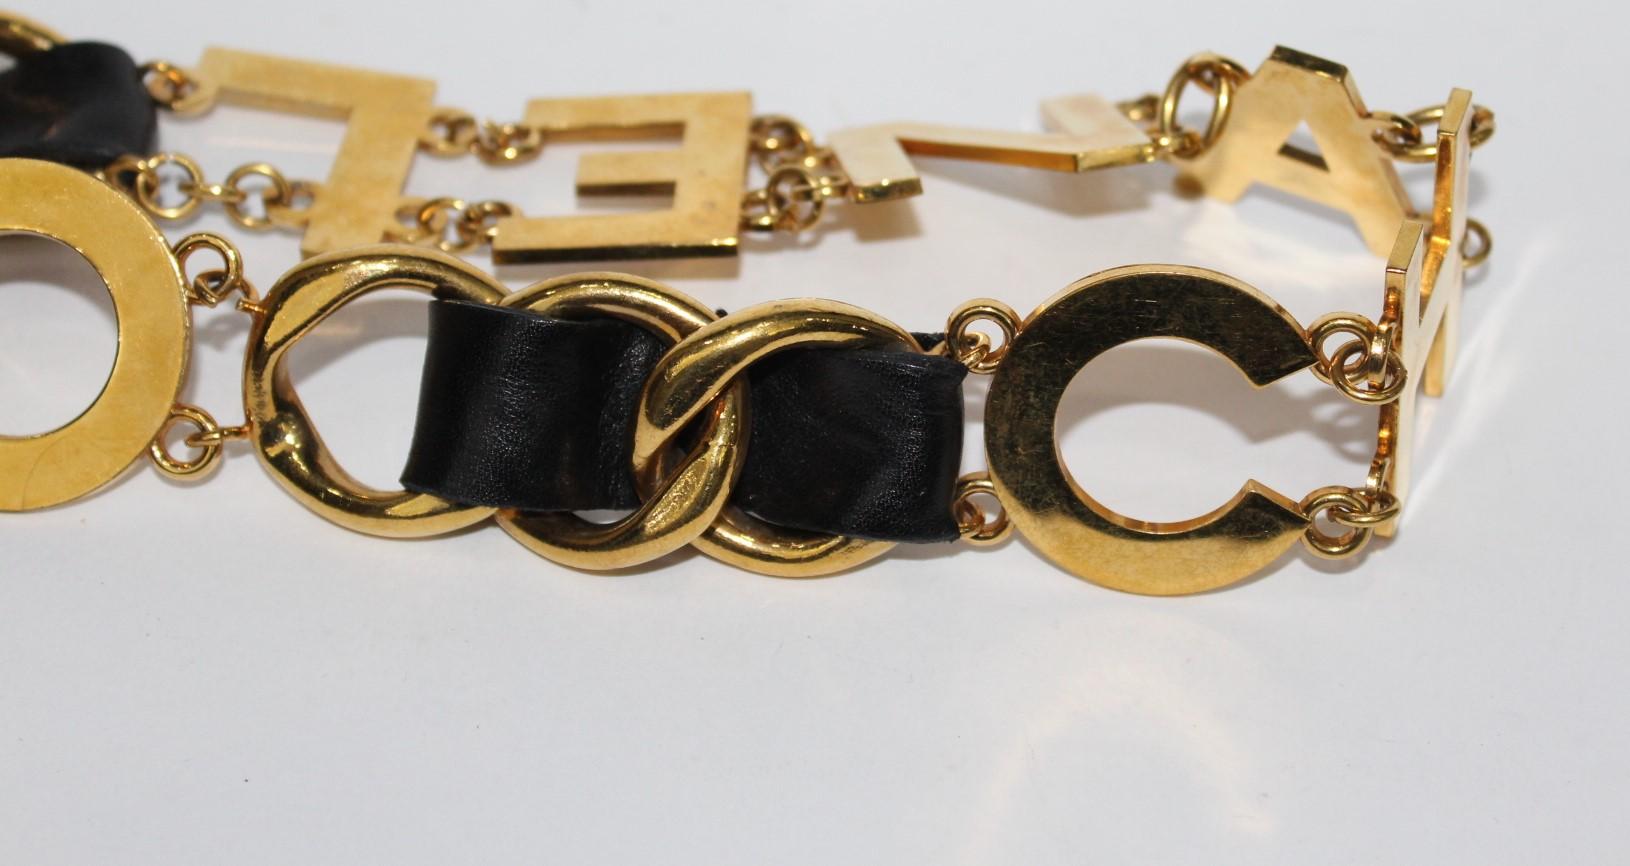 Beige Chanel Vintage Belt Black Leather 